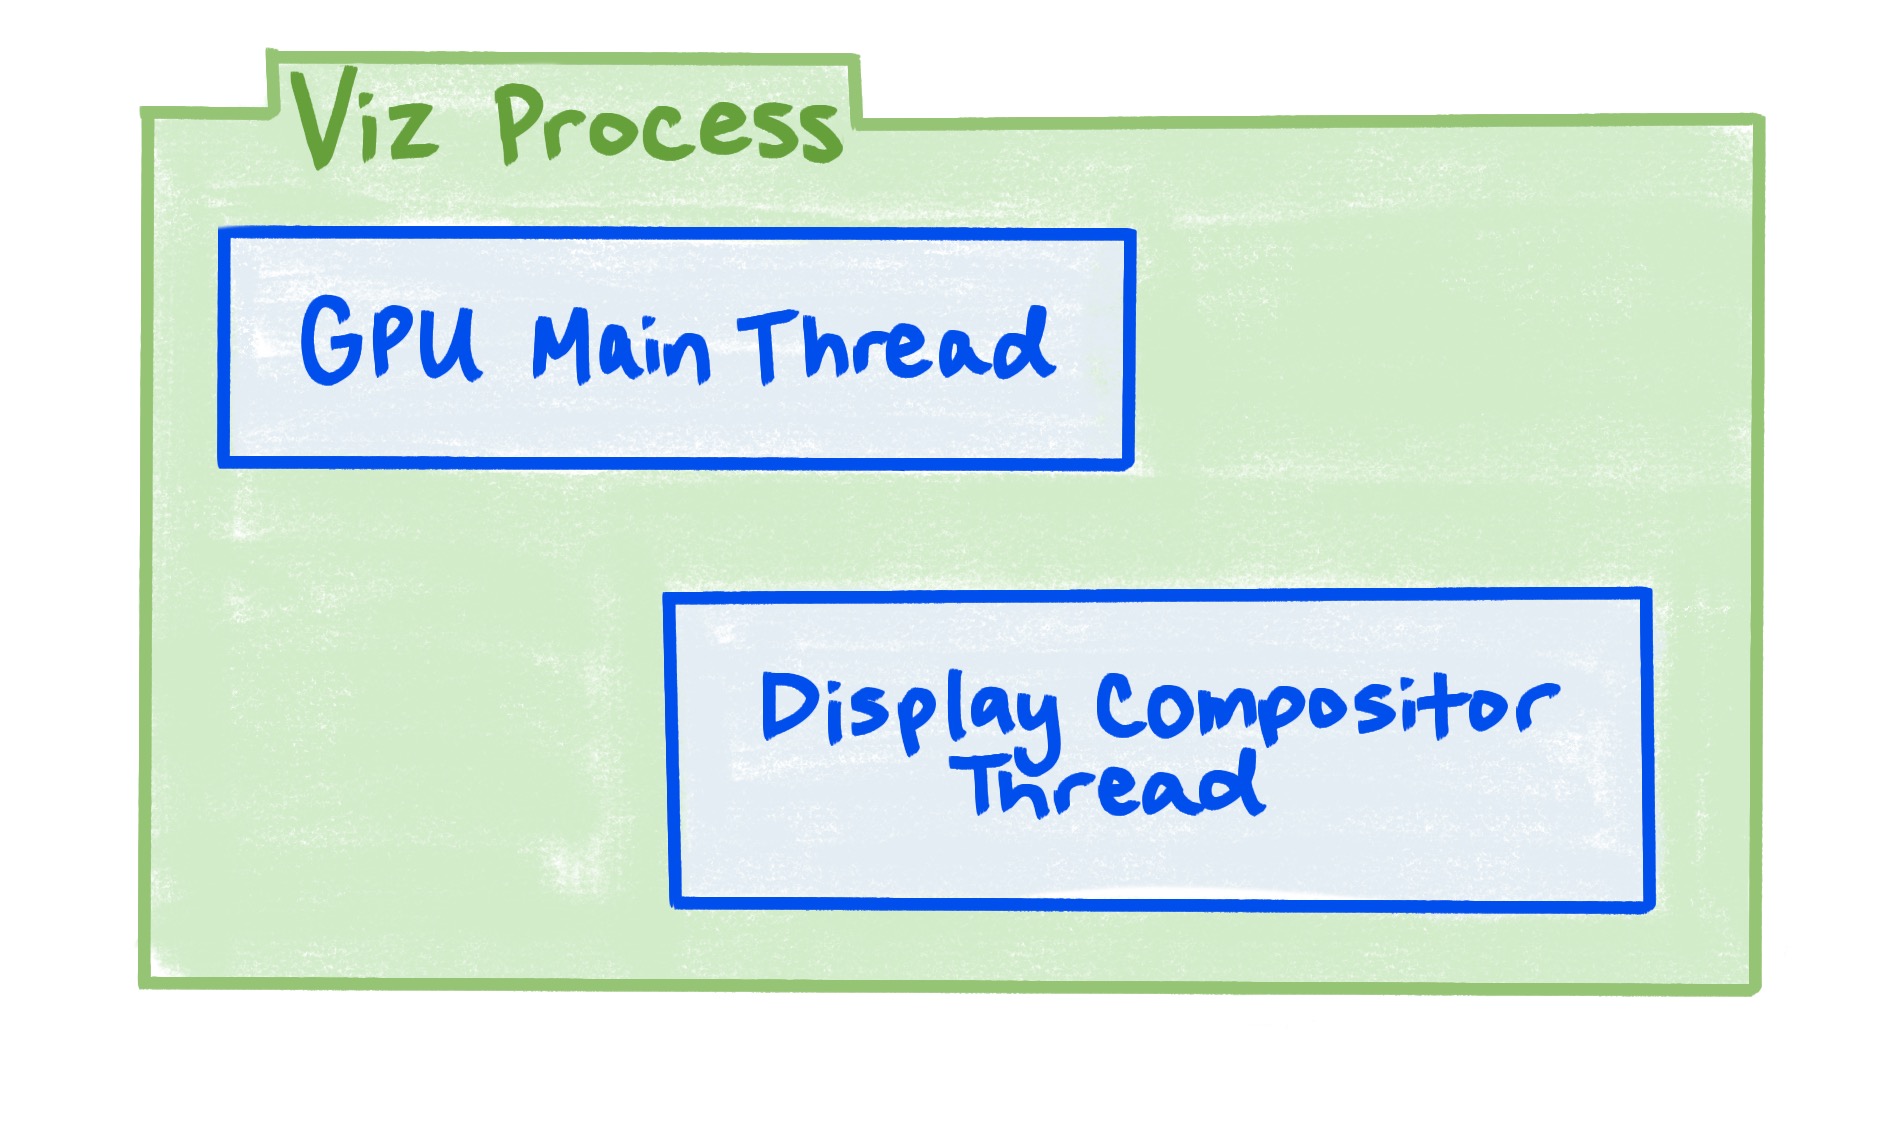 Diagram yang menunjukkan bahwa proses Viz mencakup thread utama GPU, dan thread compositor tampilan.